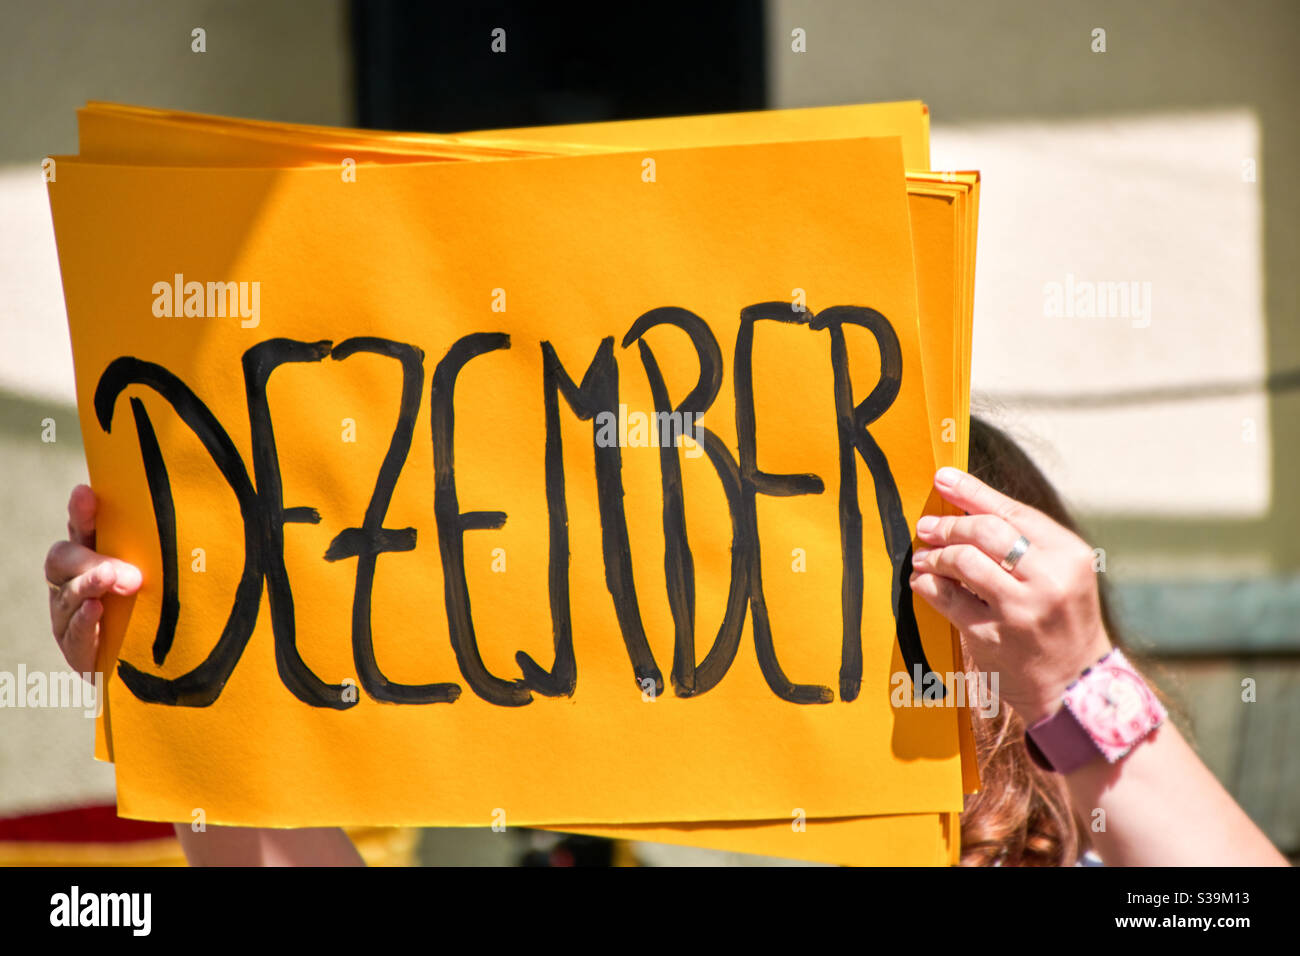 Lettere dipinte di nero formano la parola dicembre in tedesco su un cartone giallo come sfondo. Il cartello è tenuto in aria e illuminato dal sole Foto Stock